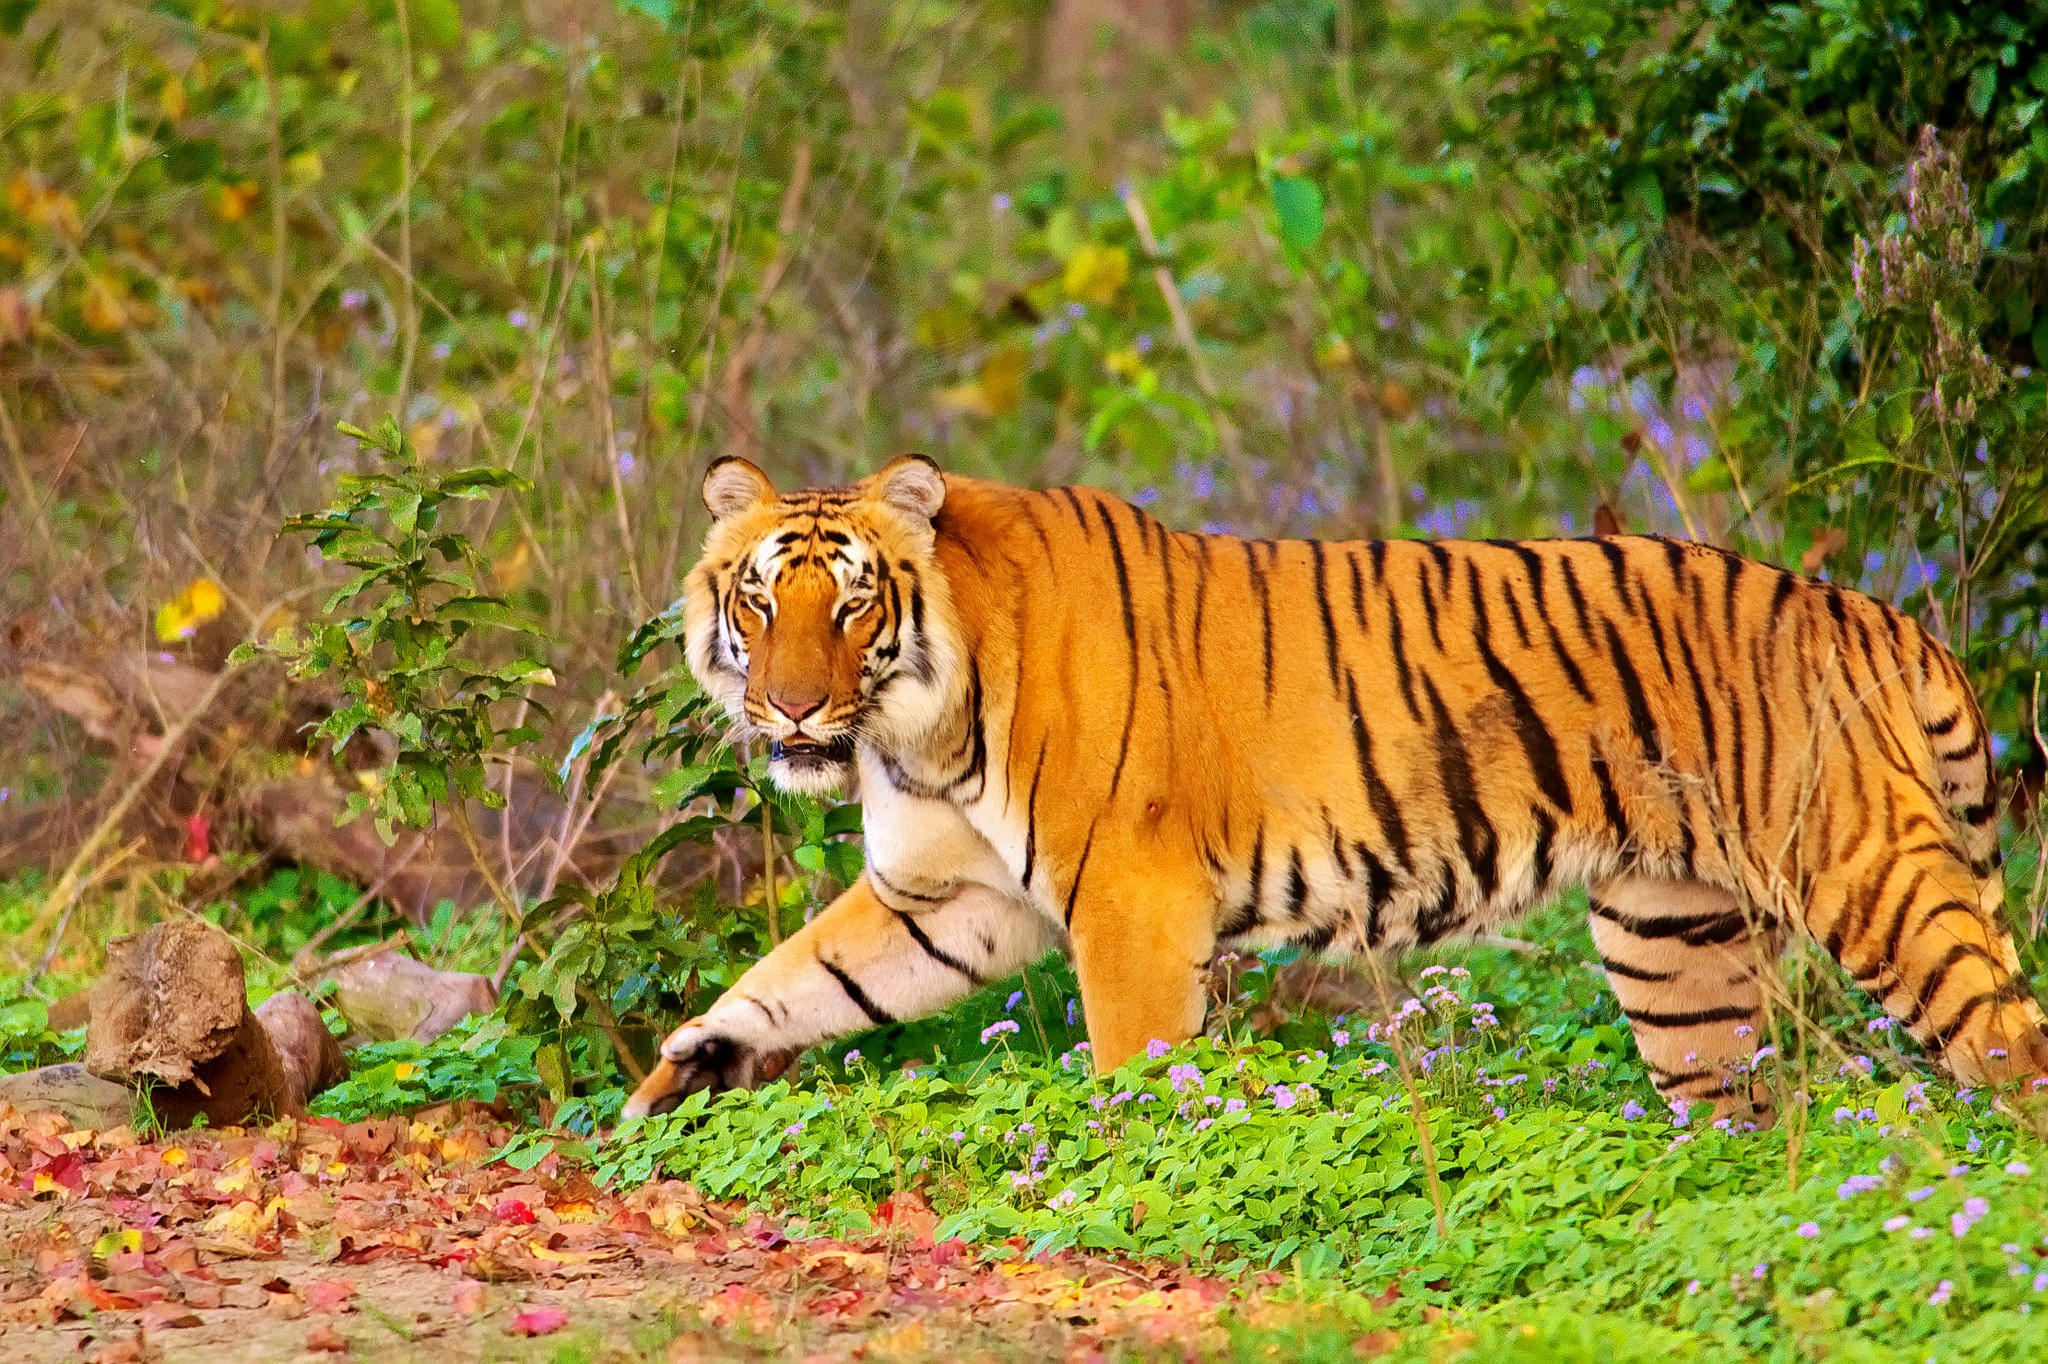 Netravali Wildlife Sanctuary Overview